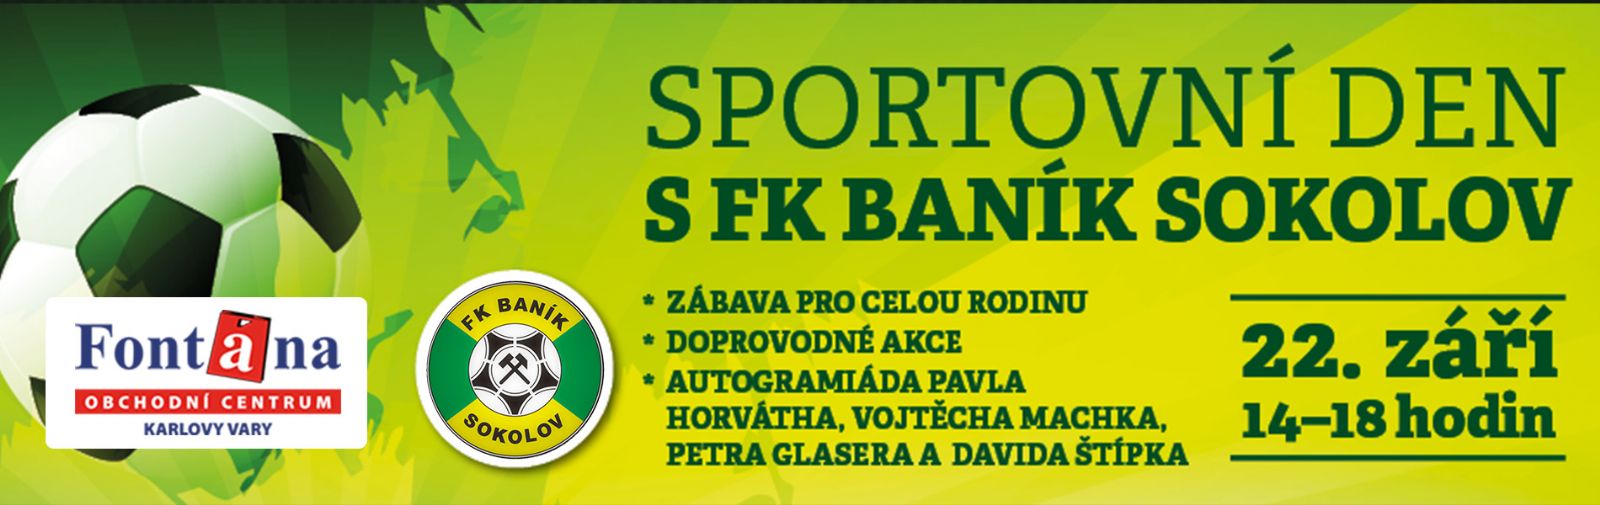 Karlovy Vary: V sobotu se bude v OC Fontána konat Sportovní den s FK Baník Sokolov